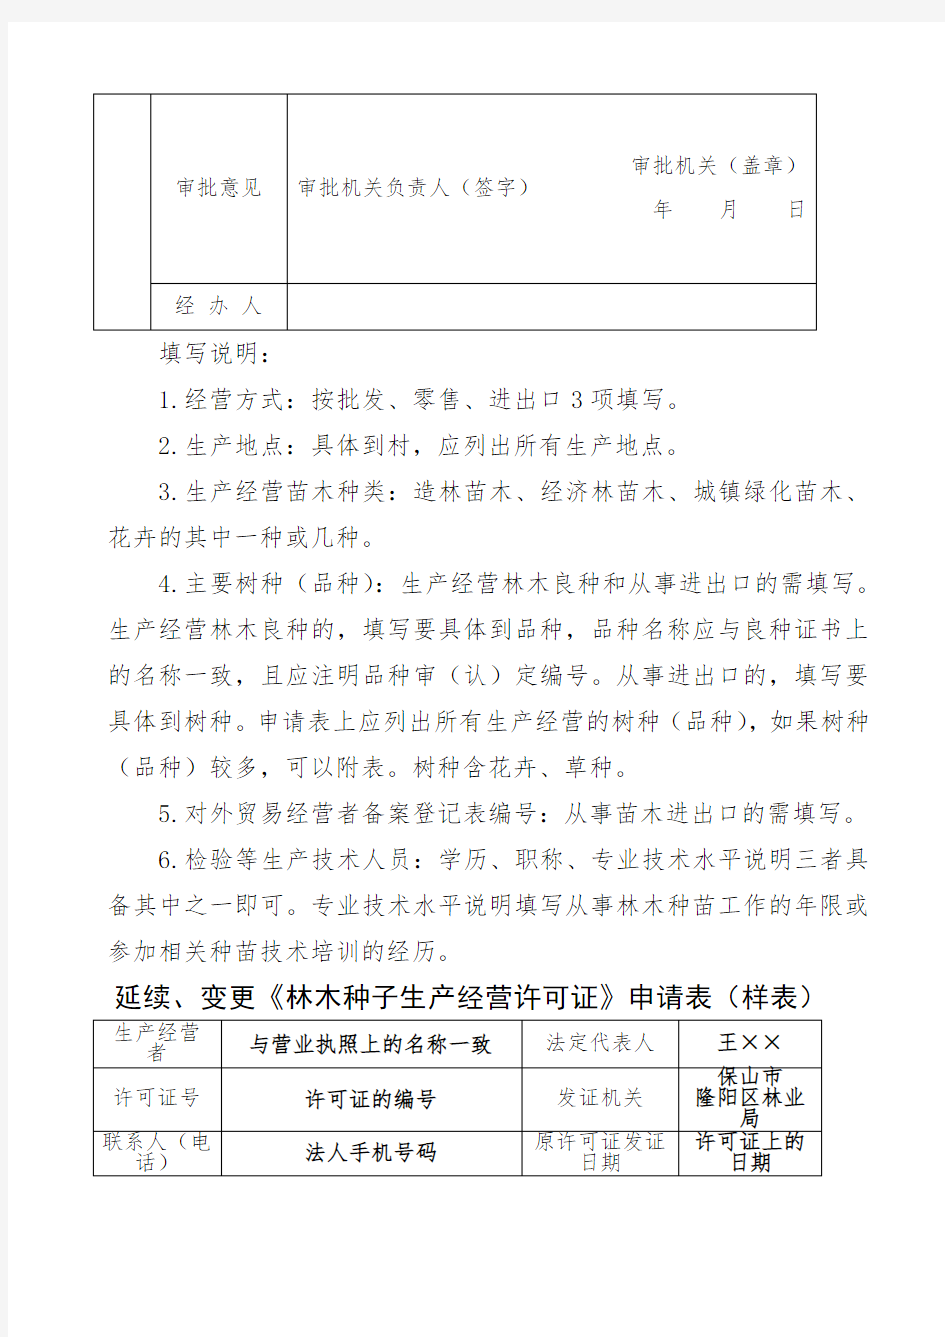 《林木种子生产经营许可证》申请表 样表 